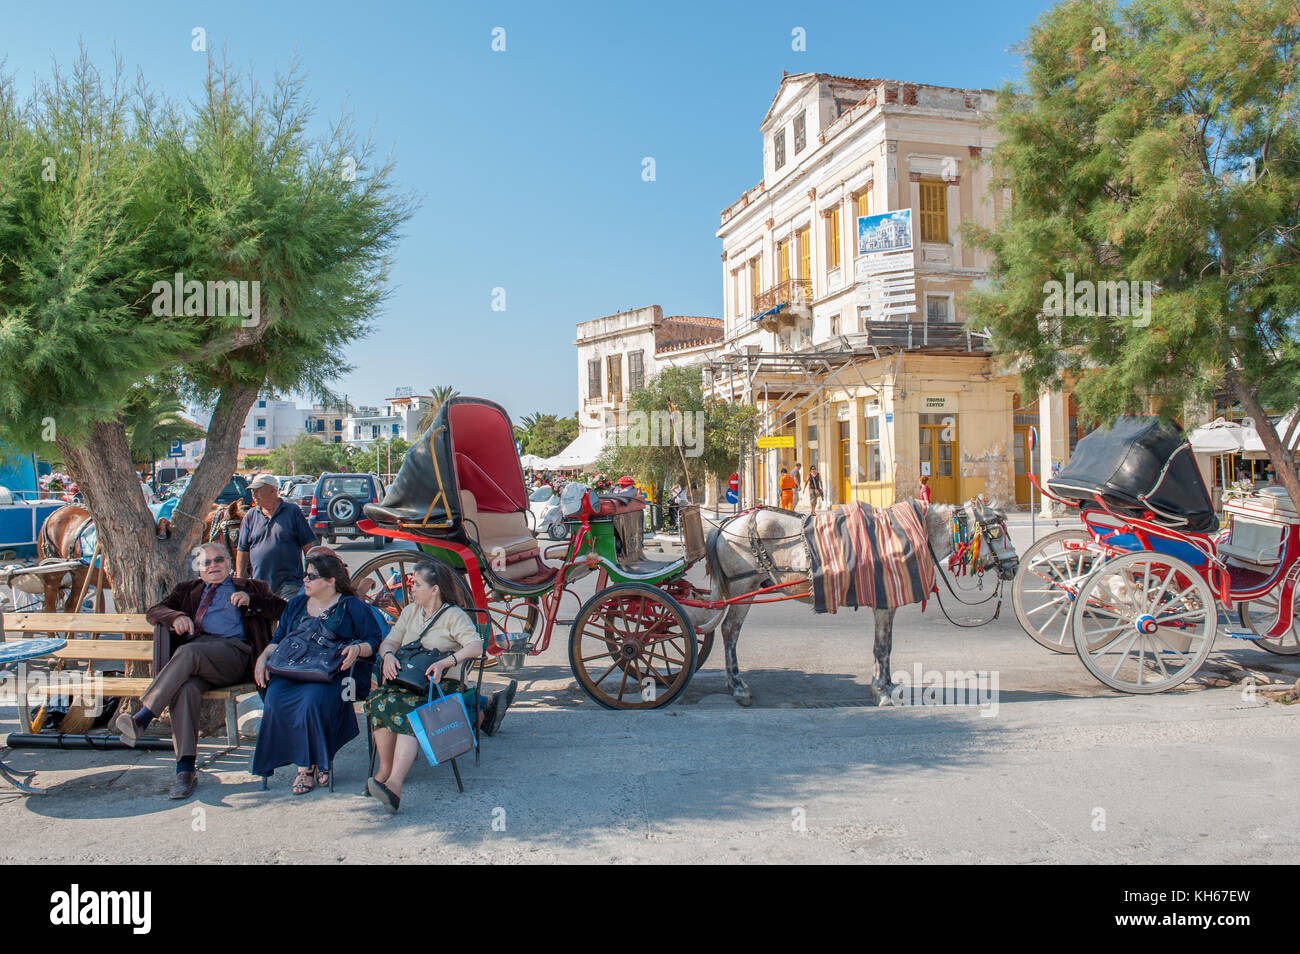 Städtische Szene aus Ägina. ägina ist eine griechische Insel in der Ägäis, die zu den Saronischen Inseln. Stockfoto